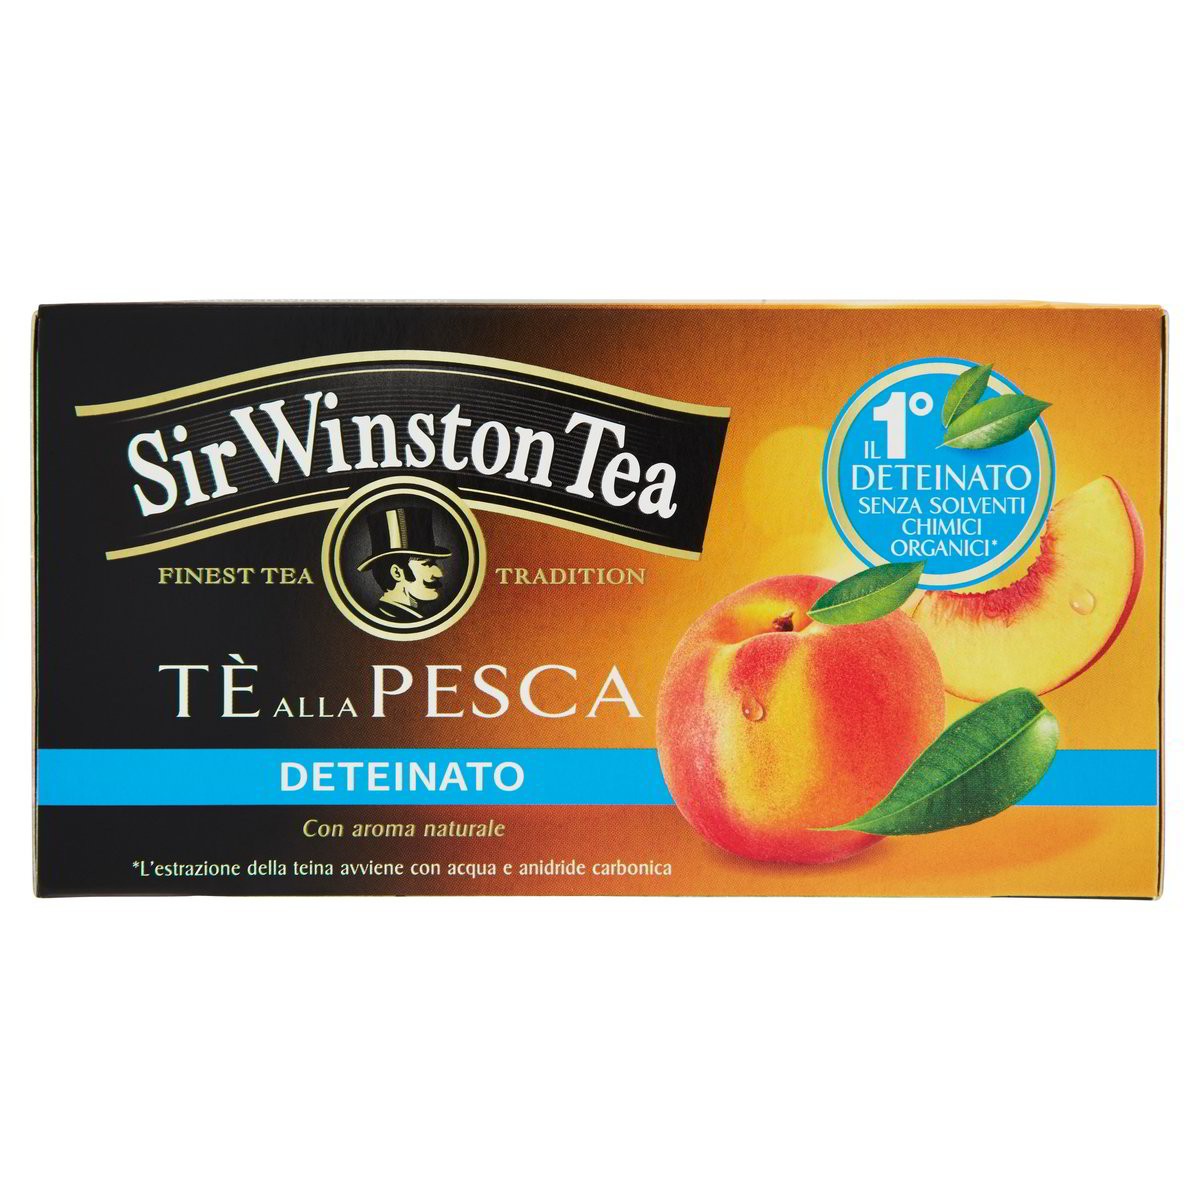 Sir Winston Tea Tè alla pesca deteinato